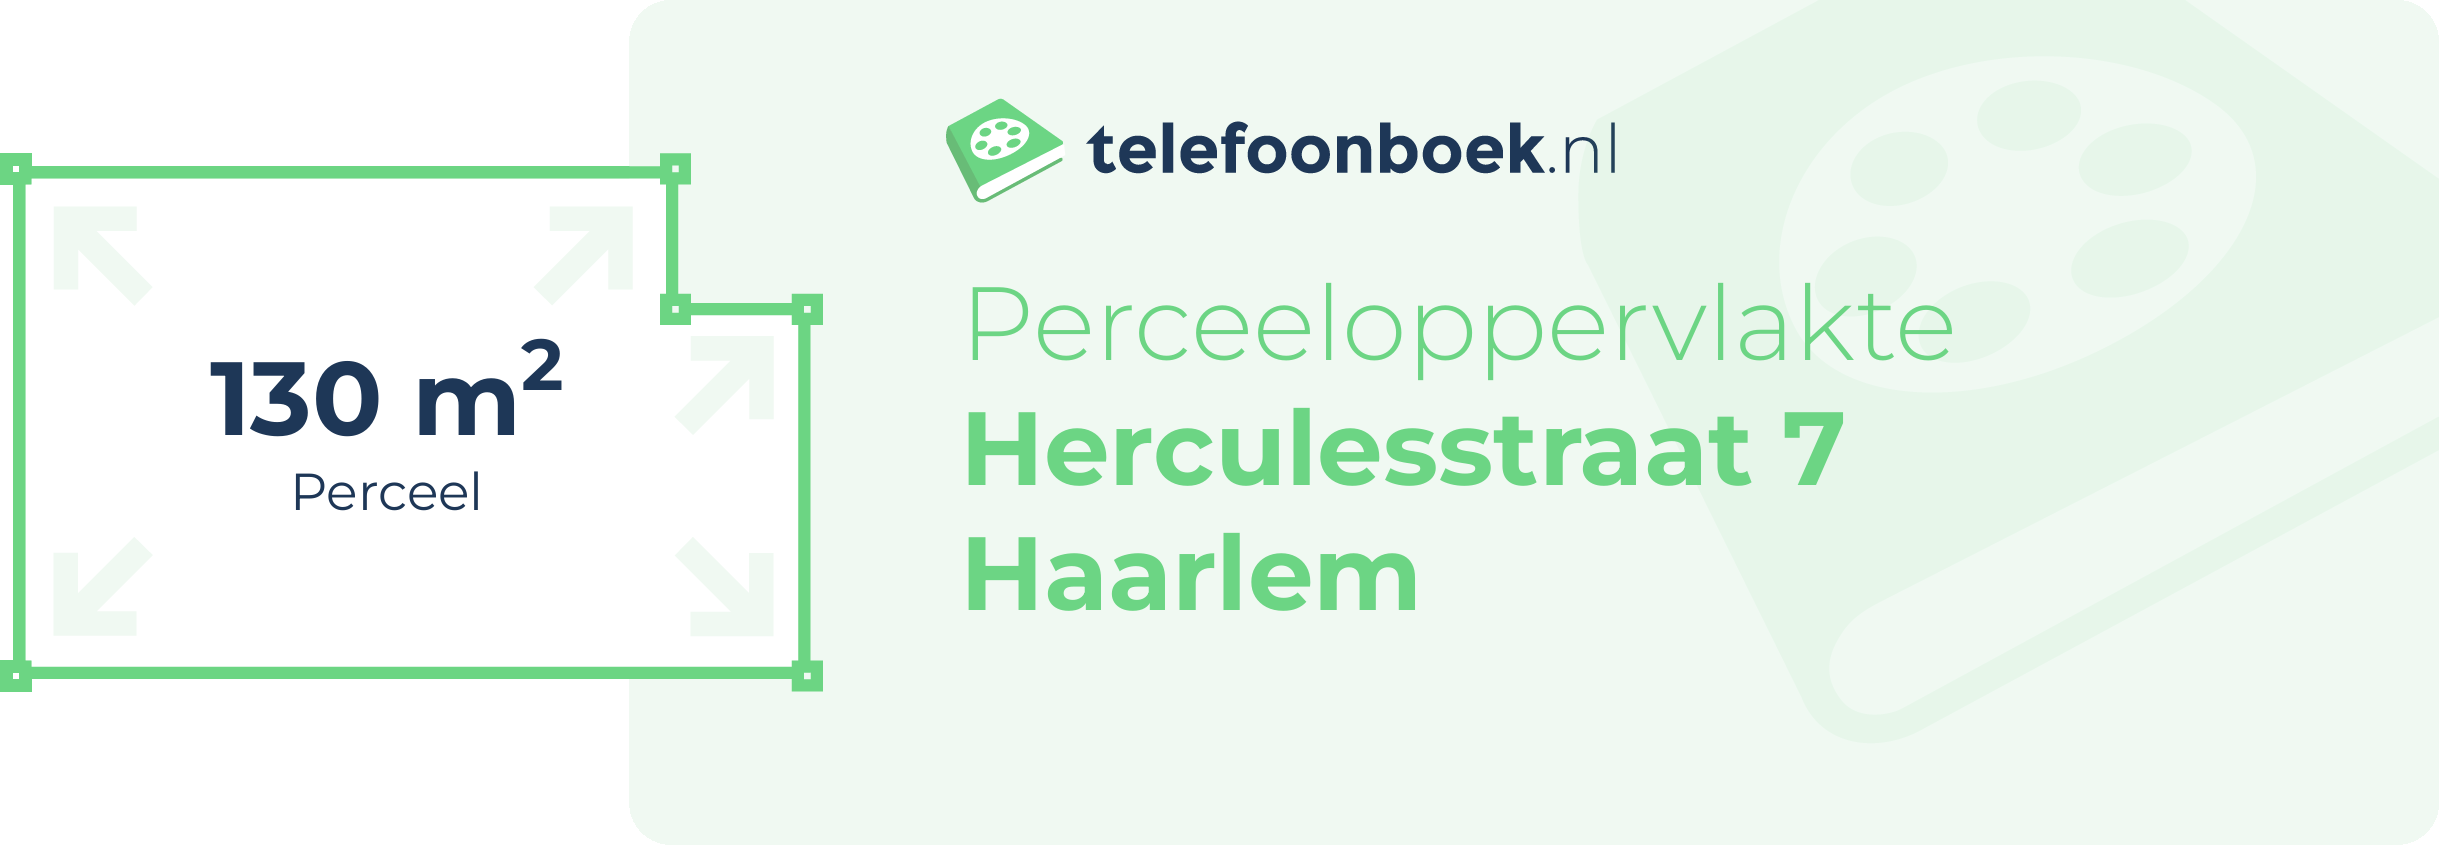 Perceeloppervlakte Herculesstraat 7 Haarlem